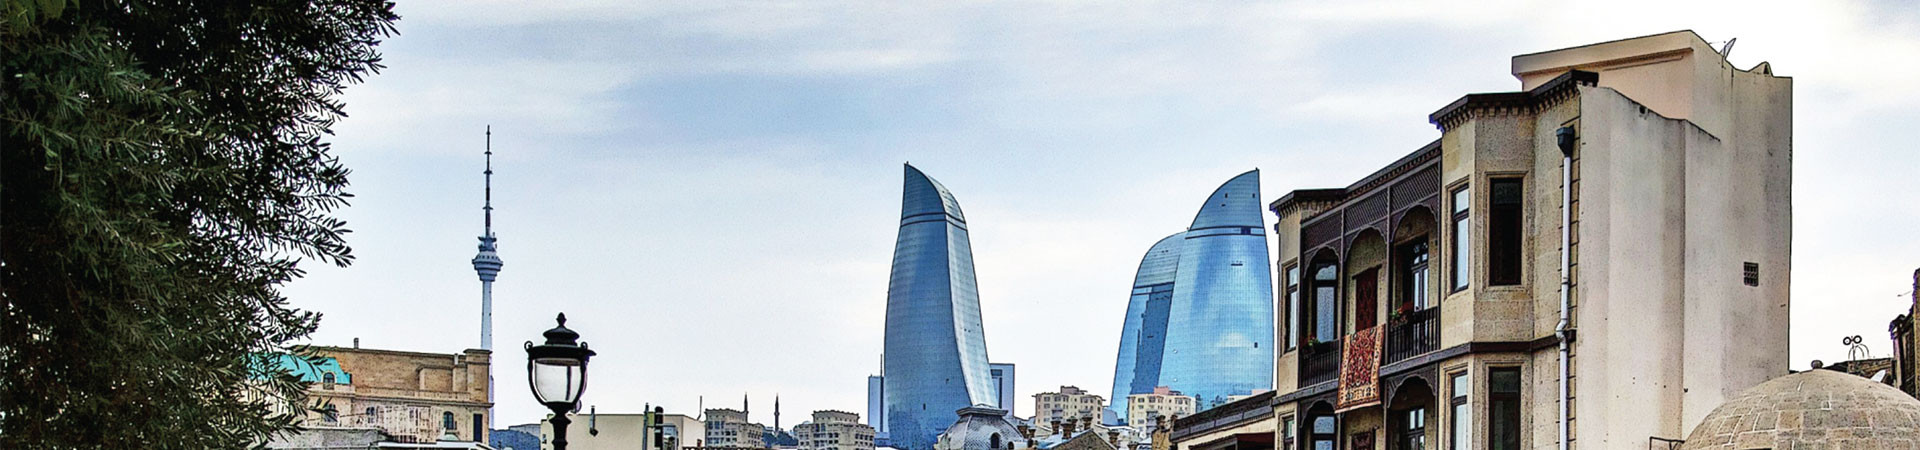 Azerbaijan has been elected a member of the Executive Board of UNESCO